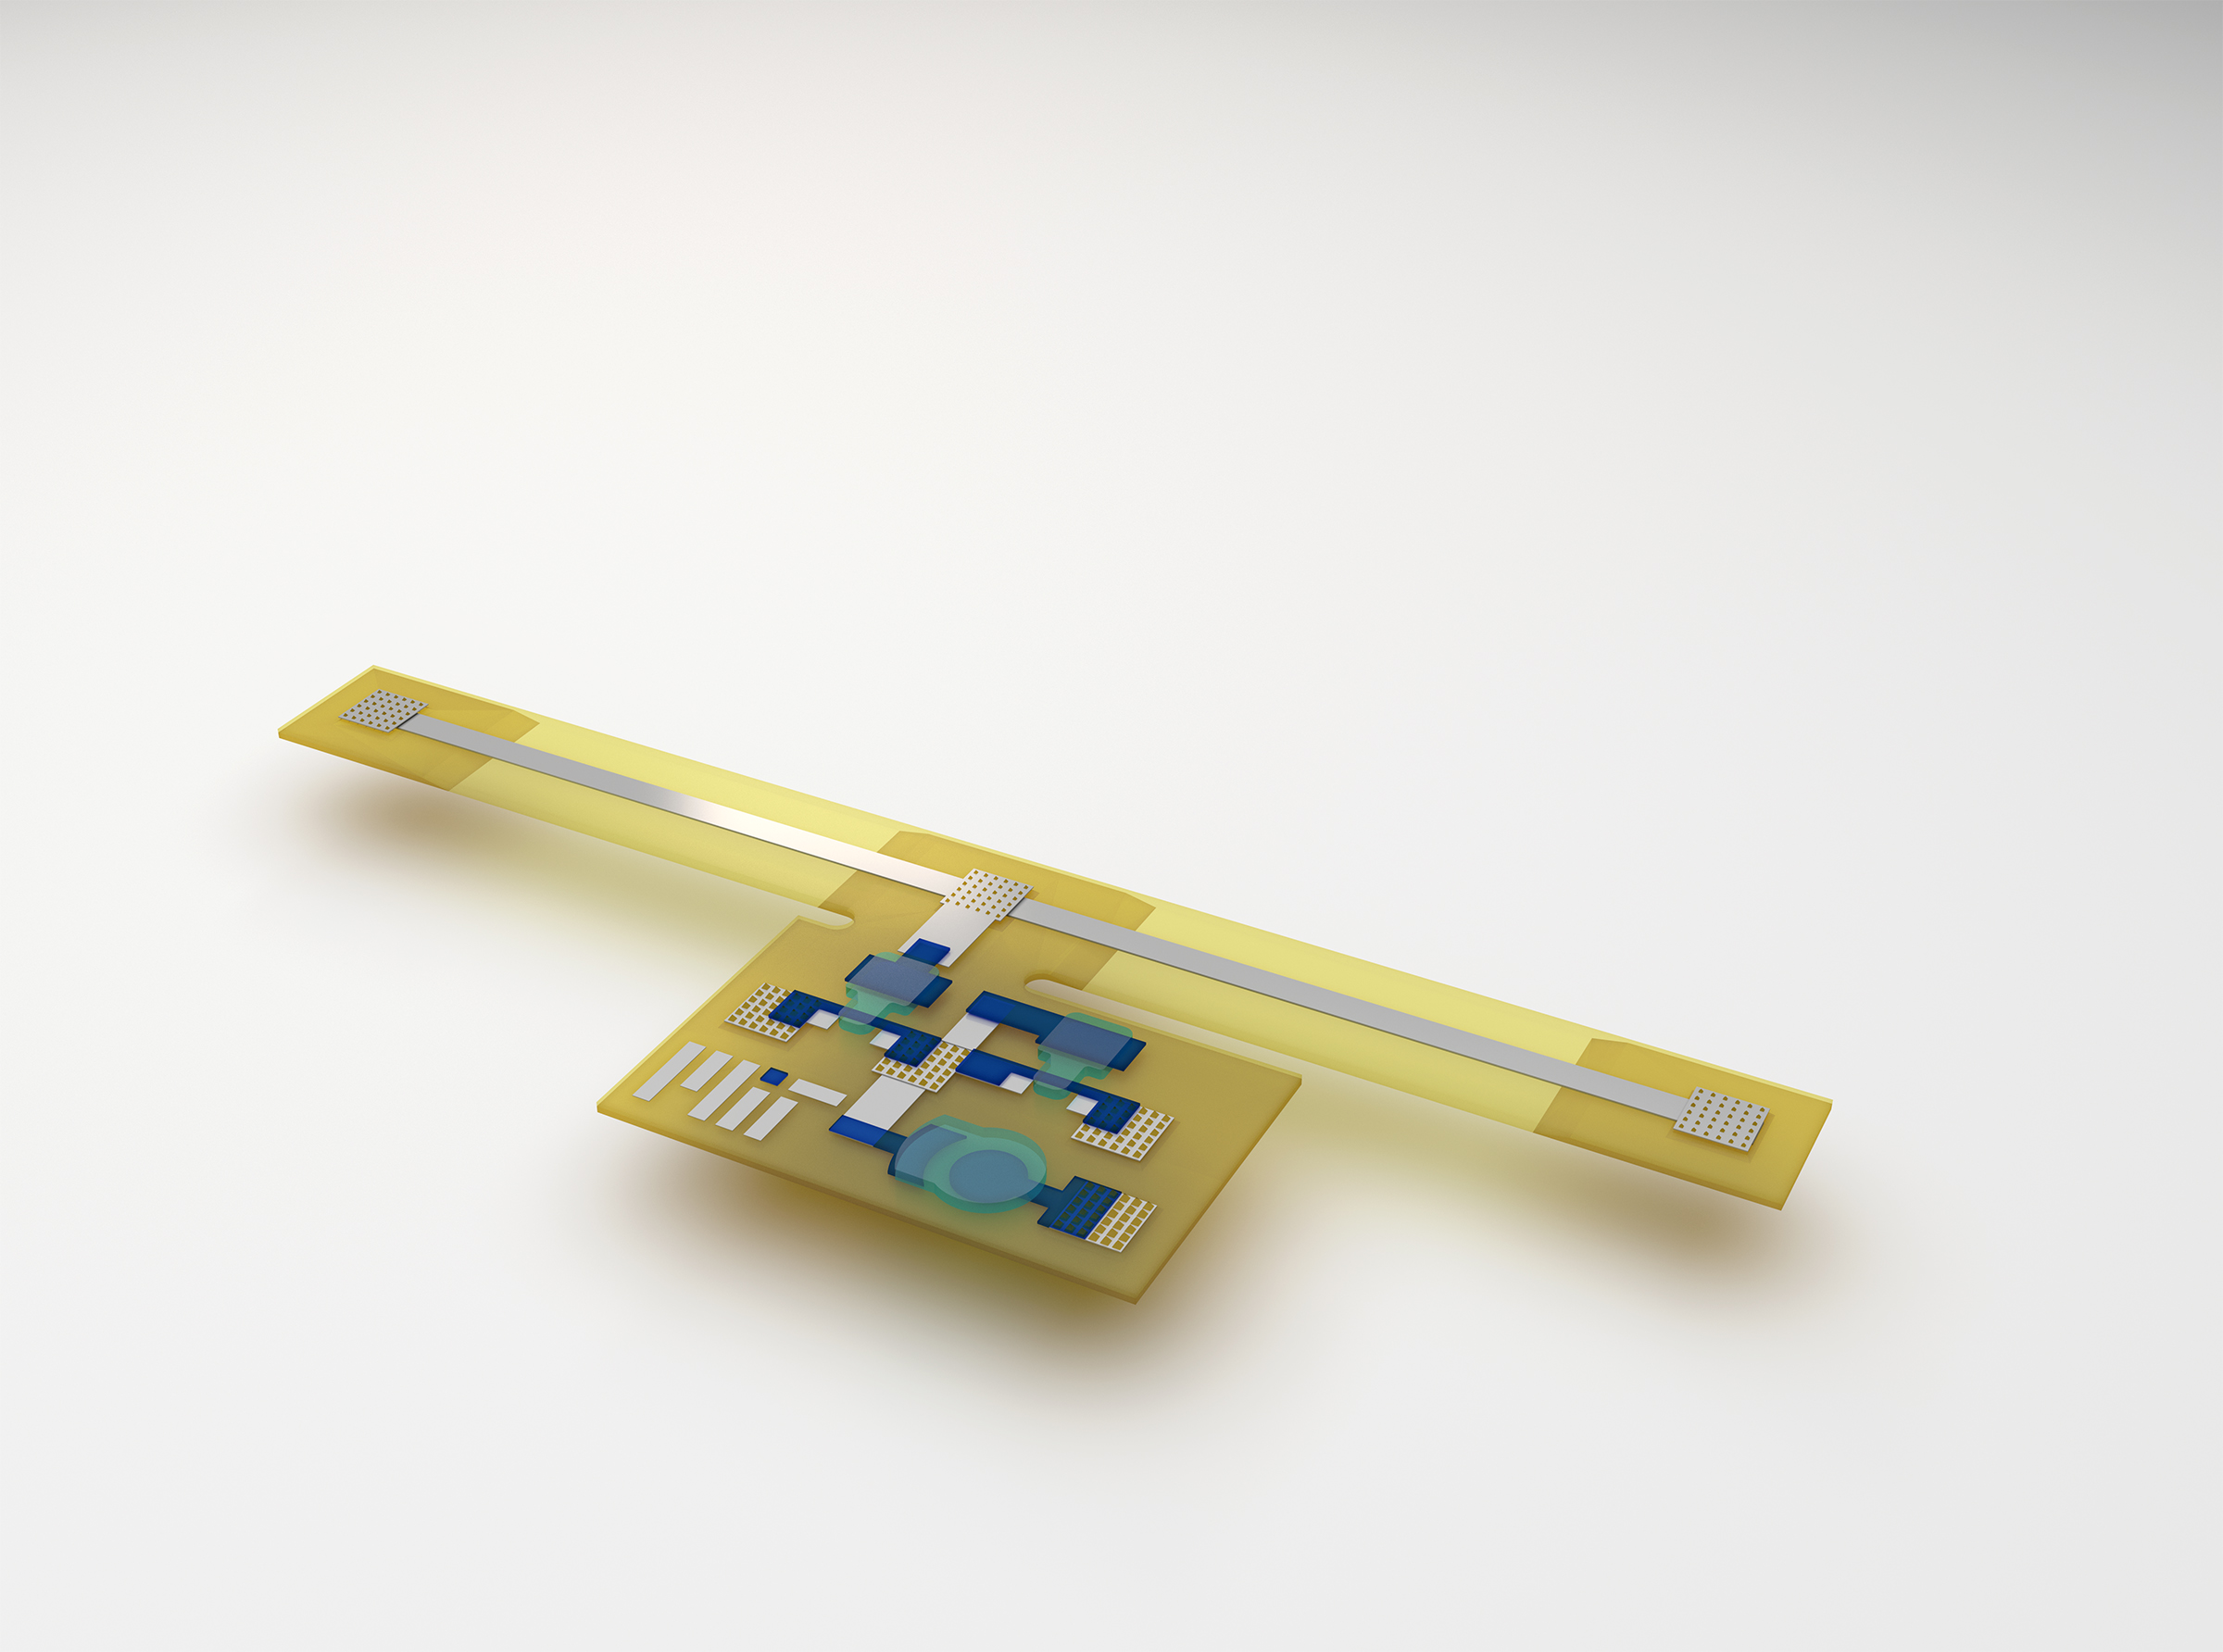 3D-Printed Autonomous Sensory Composites